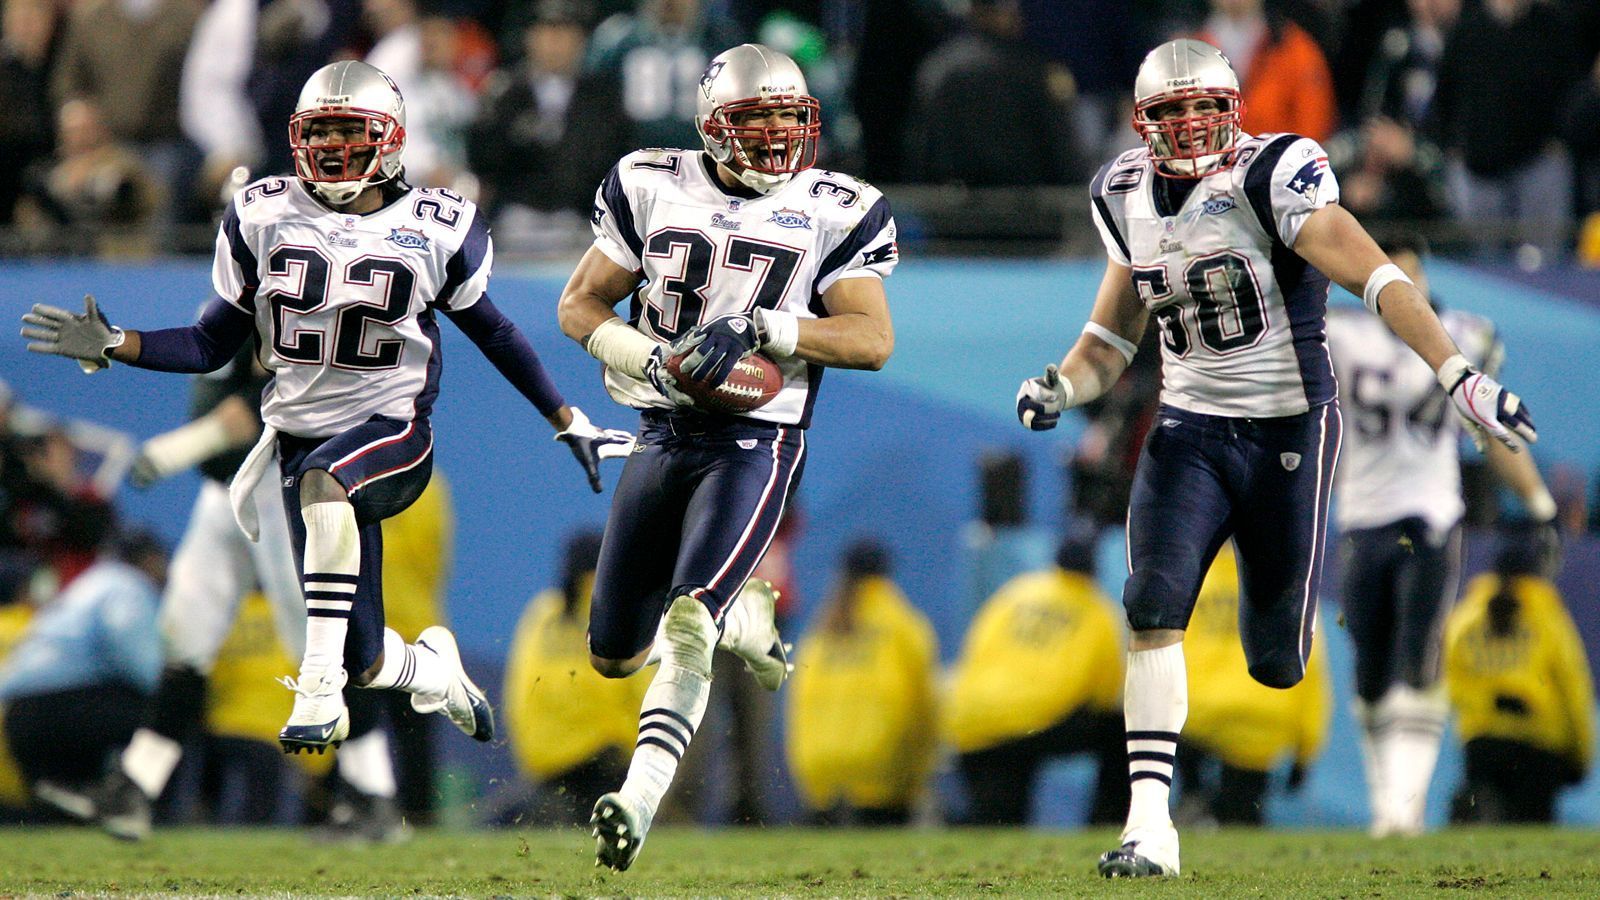 
                <strong>2005 - Super Bowl XXXIX - New England Patriots</strong><br>
                Auch ein Jahr später waren die New England Patriots wieder siegreich, diesmal mit 24:21 gegen die Philadelphia Eagles. Die "Pats" waren damit nach den Dallas Cowboys erst das zweite Team, das den Super Bowl innerhalb von vier Jahren dreimal gewann.
              